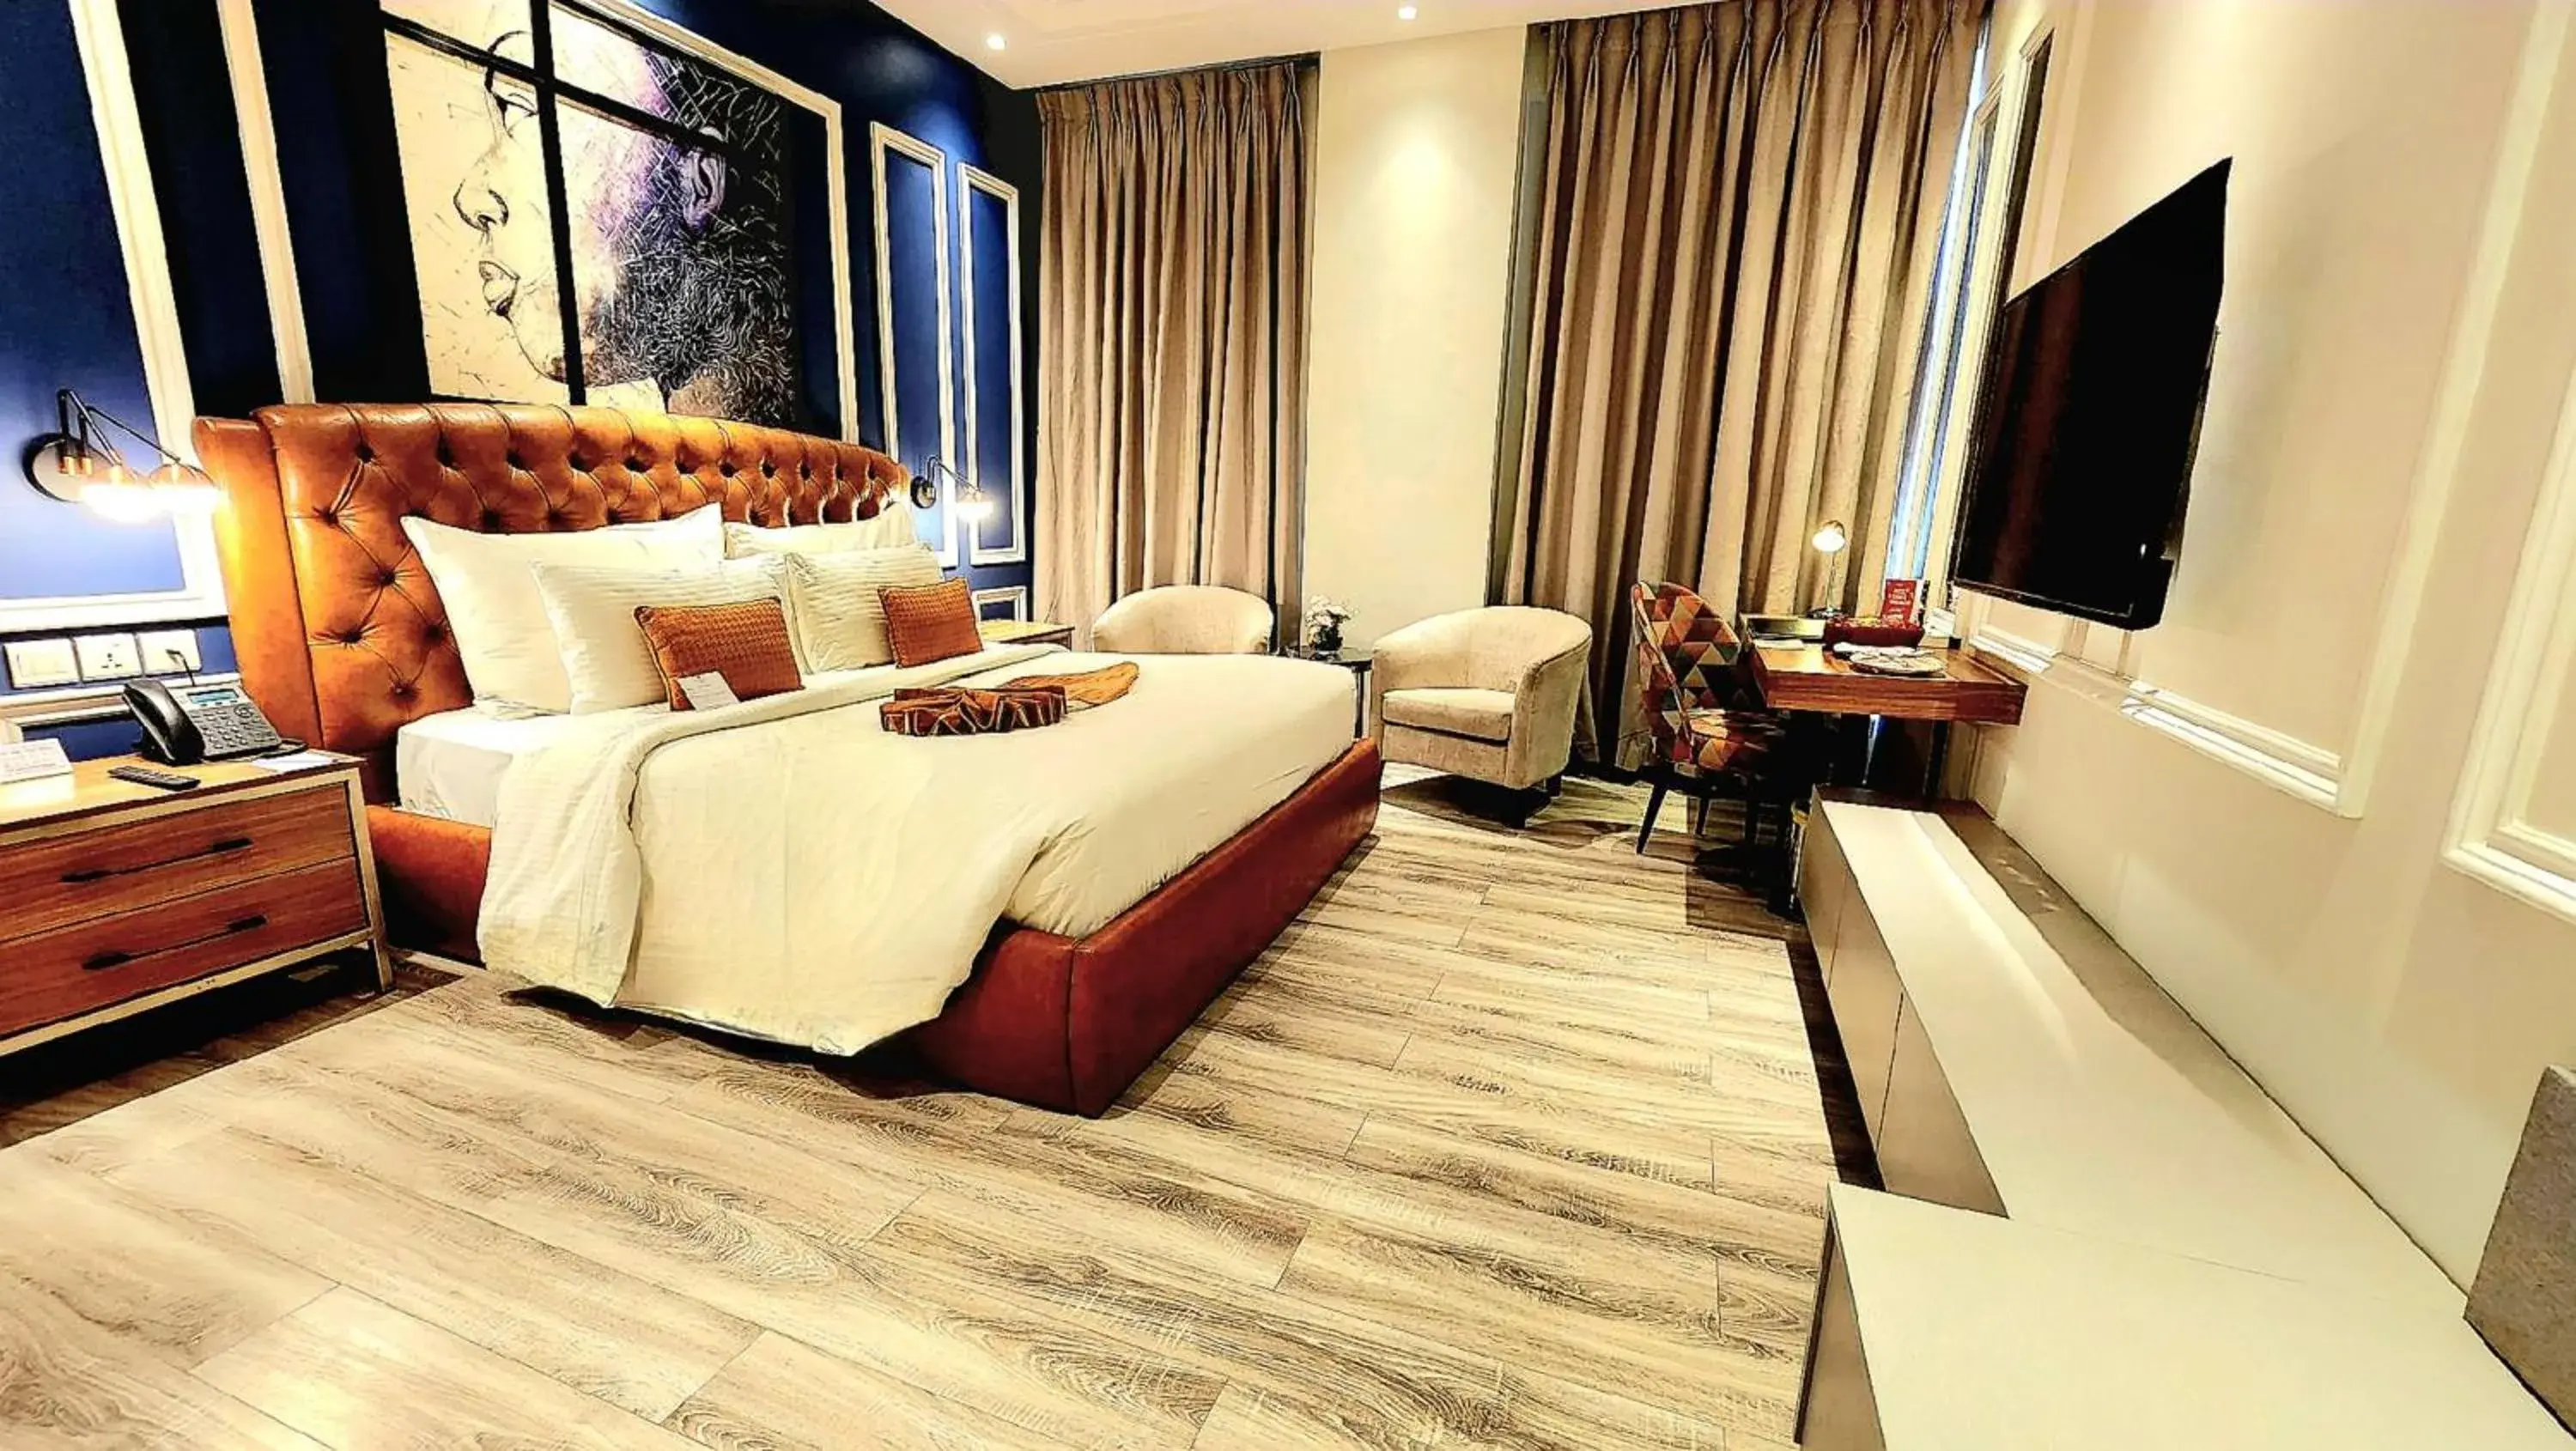 Bedroom, Bed in Best Western Premier Hotel Gulberg Lahore